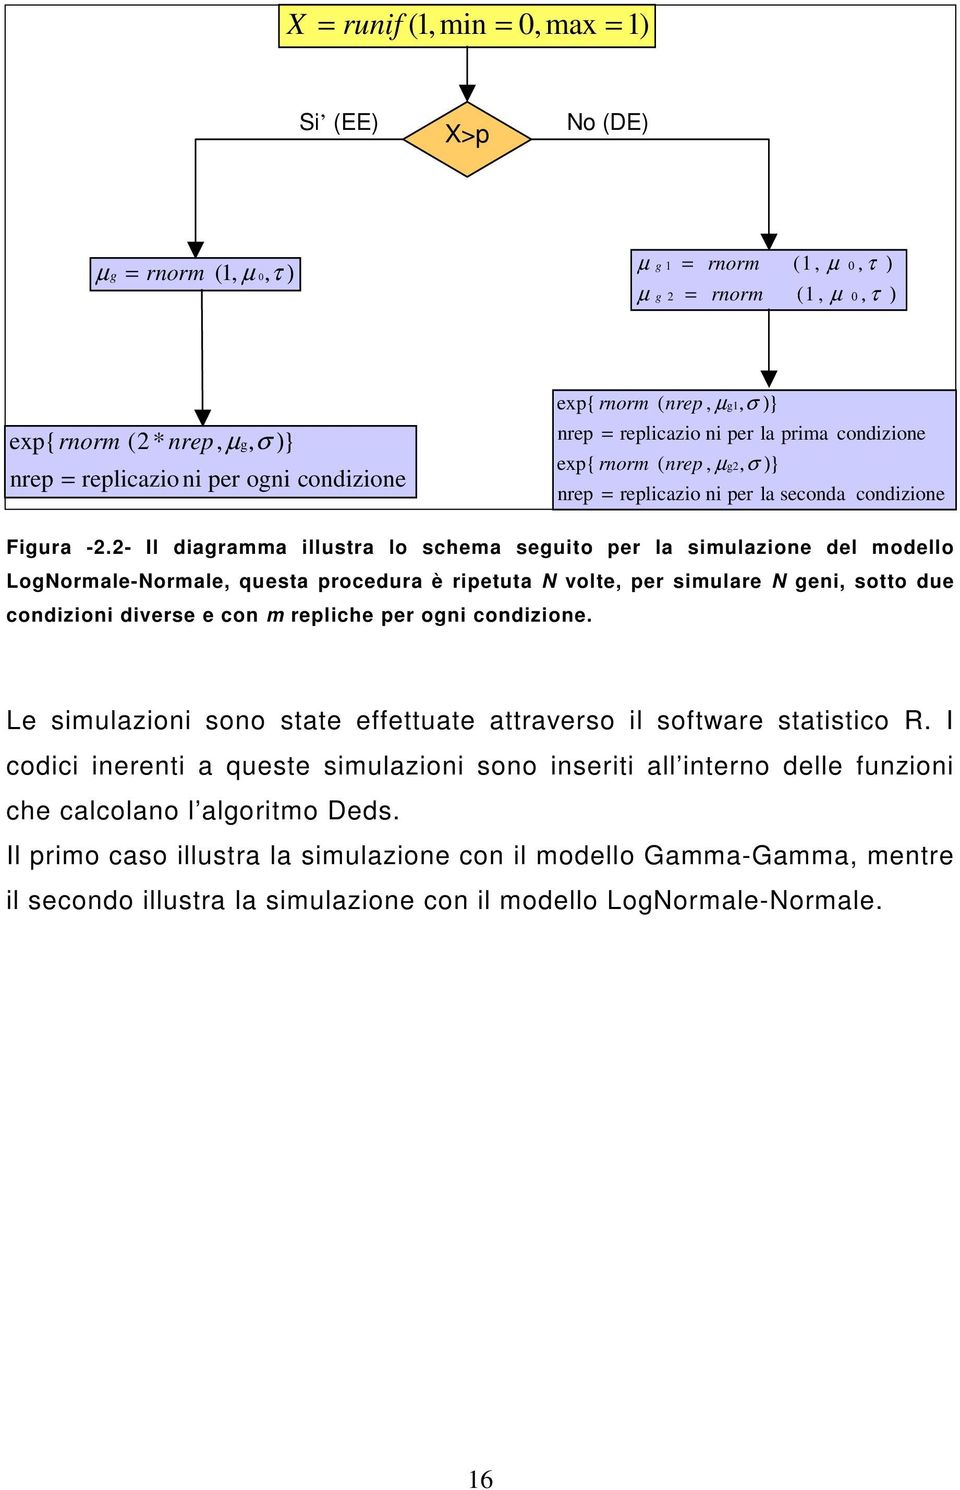 - Il diagramma illustra lo schema seguito per la simulazione del modello LogNormale-Normale, questa procedura è ripetuta N volte, per simulare N geni, sotto due condizioni diverse e con m repliche